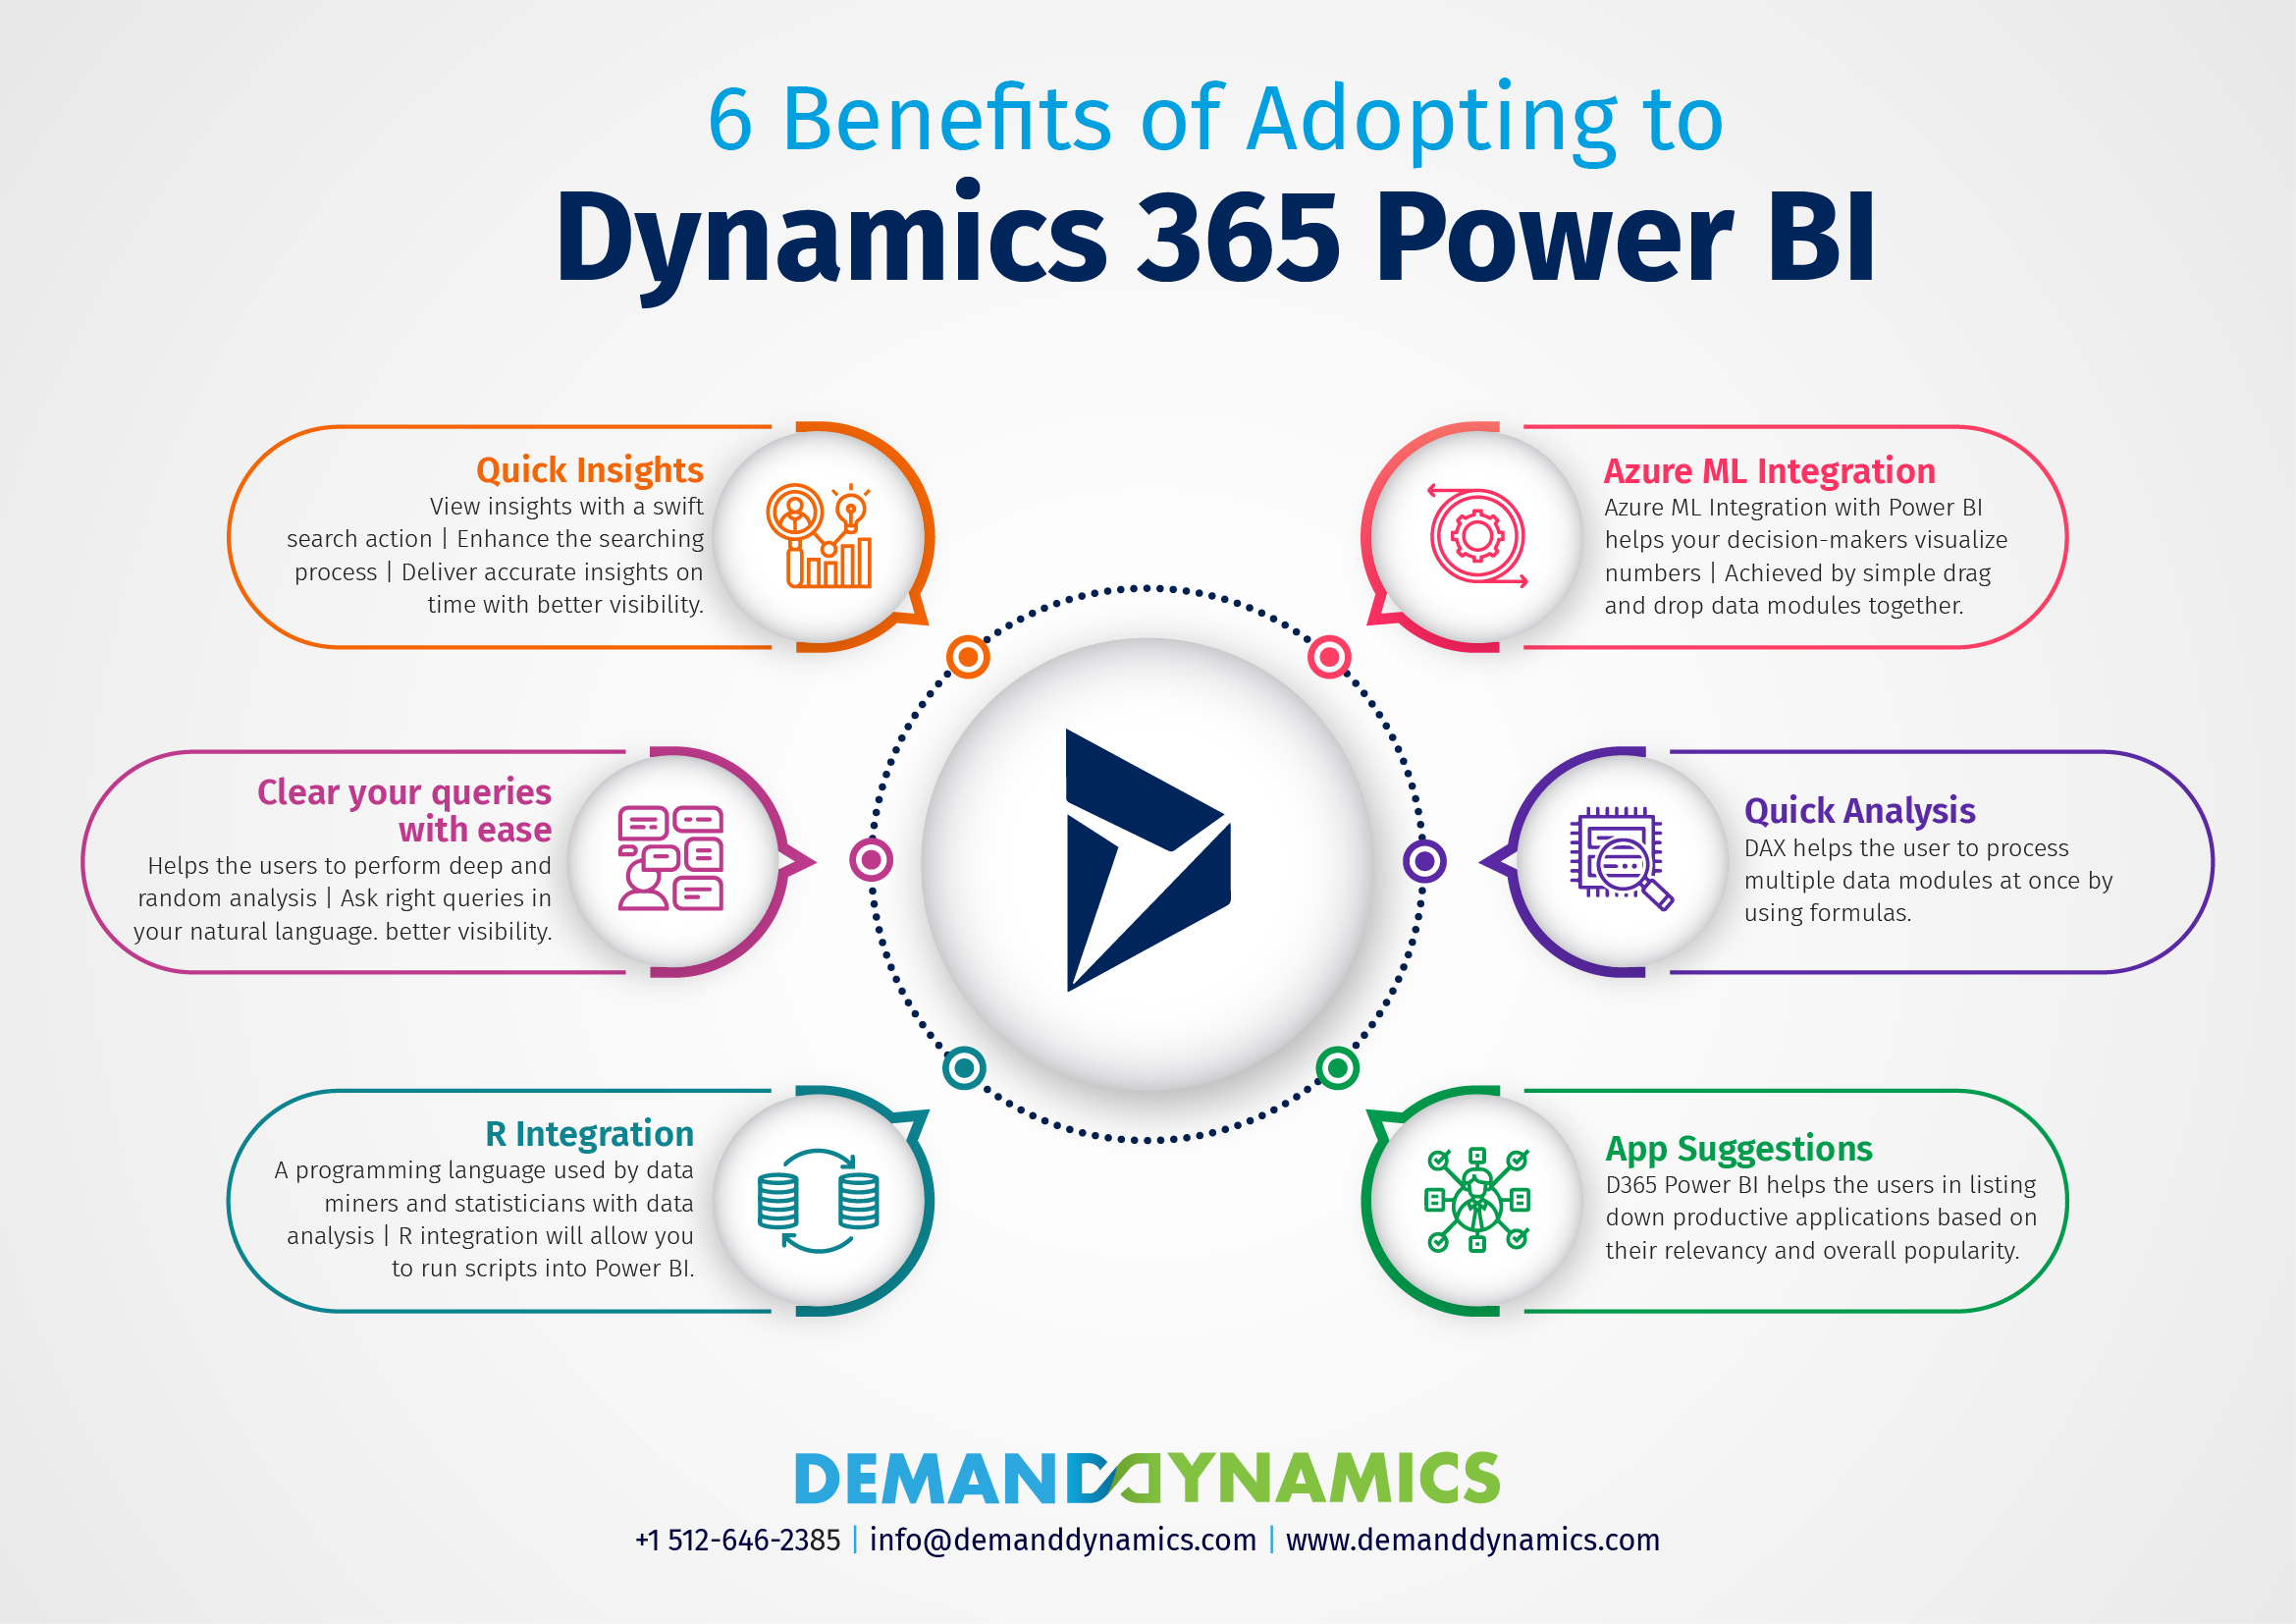 Dynamics 365 Power BI Benefits